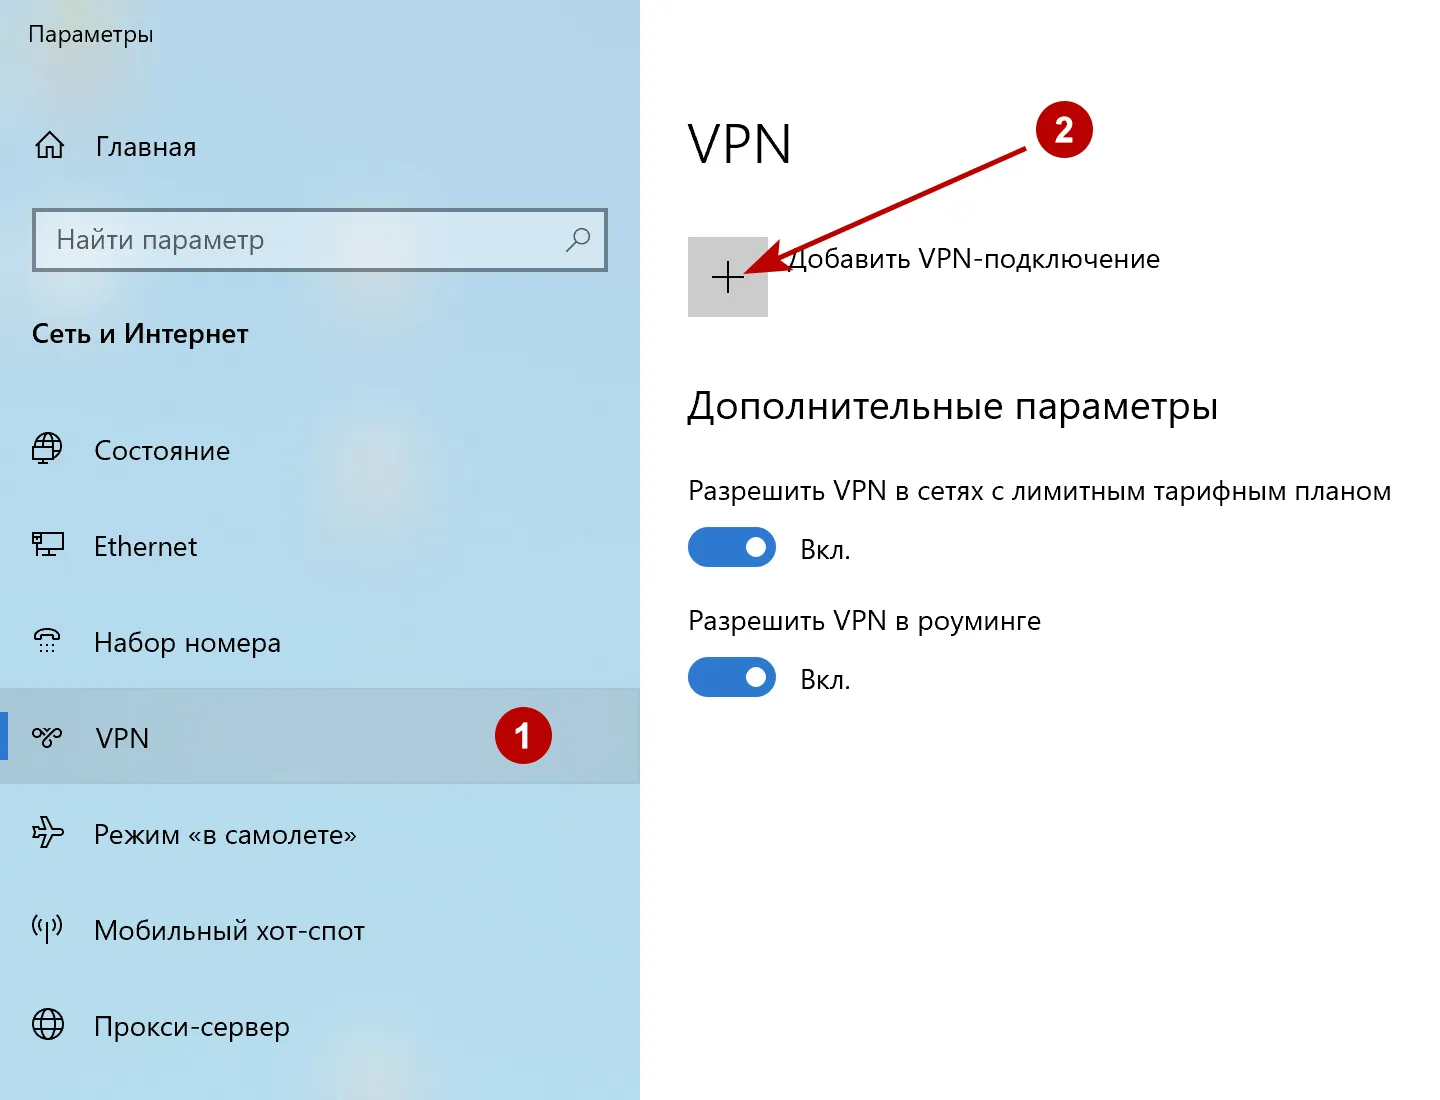 Добавить IKEv2 VPN подключение в Windows 10